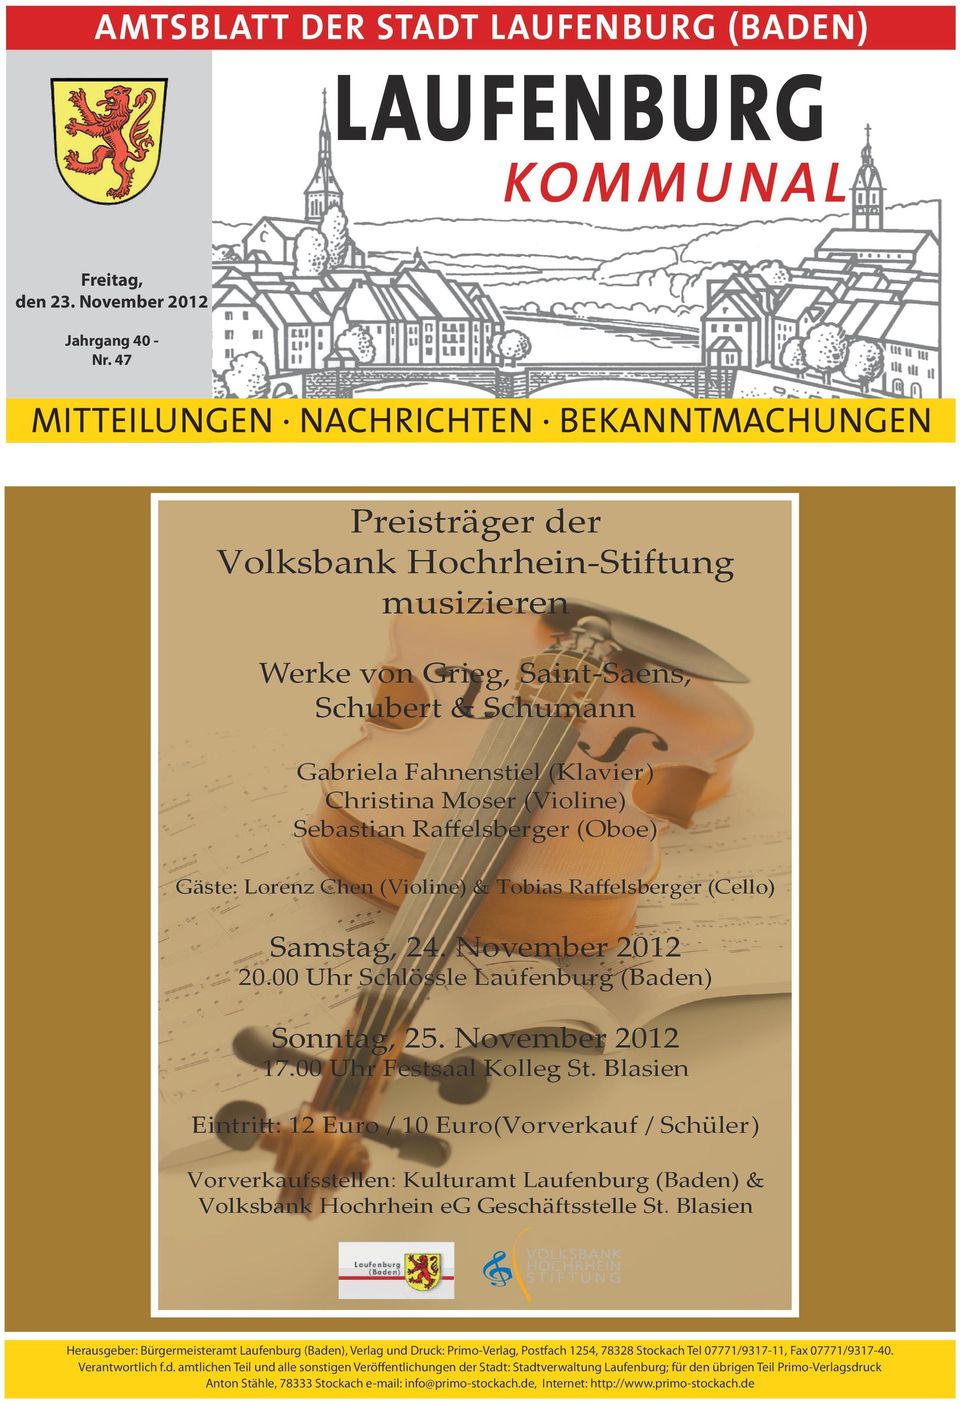 Gäste: Lorenz Chen (Violine) & Tobias Raffelsberger (Cello) Samstag, 24. November 2012 20.00 Uhr Schlössle Laufenburg (Baden) Sonntag, 25. November 2012 17.00 Uhr Festsaal Kolleg St.